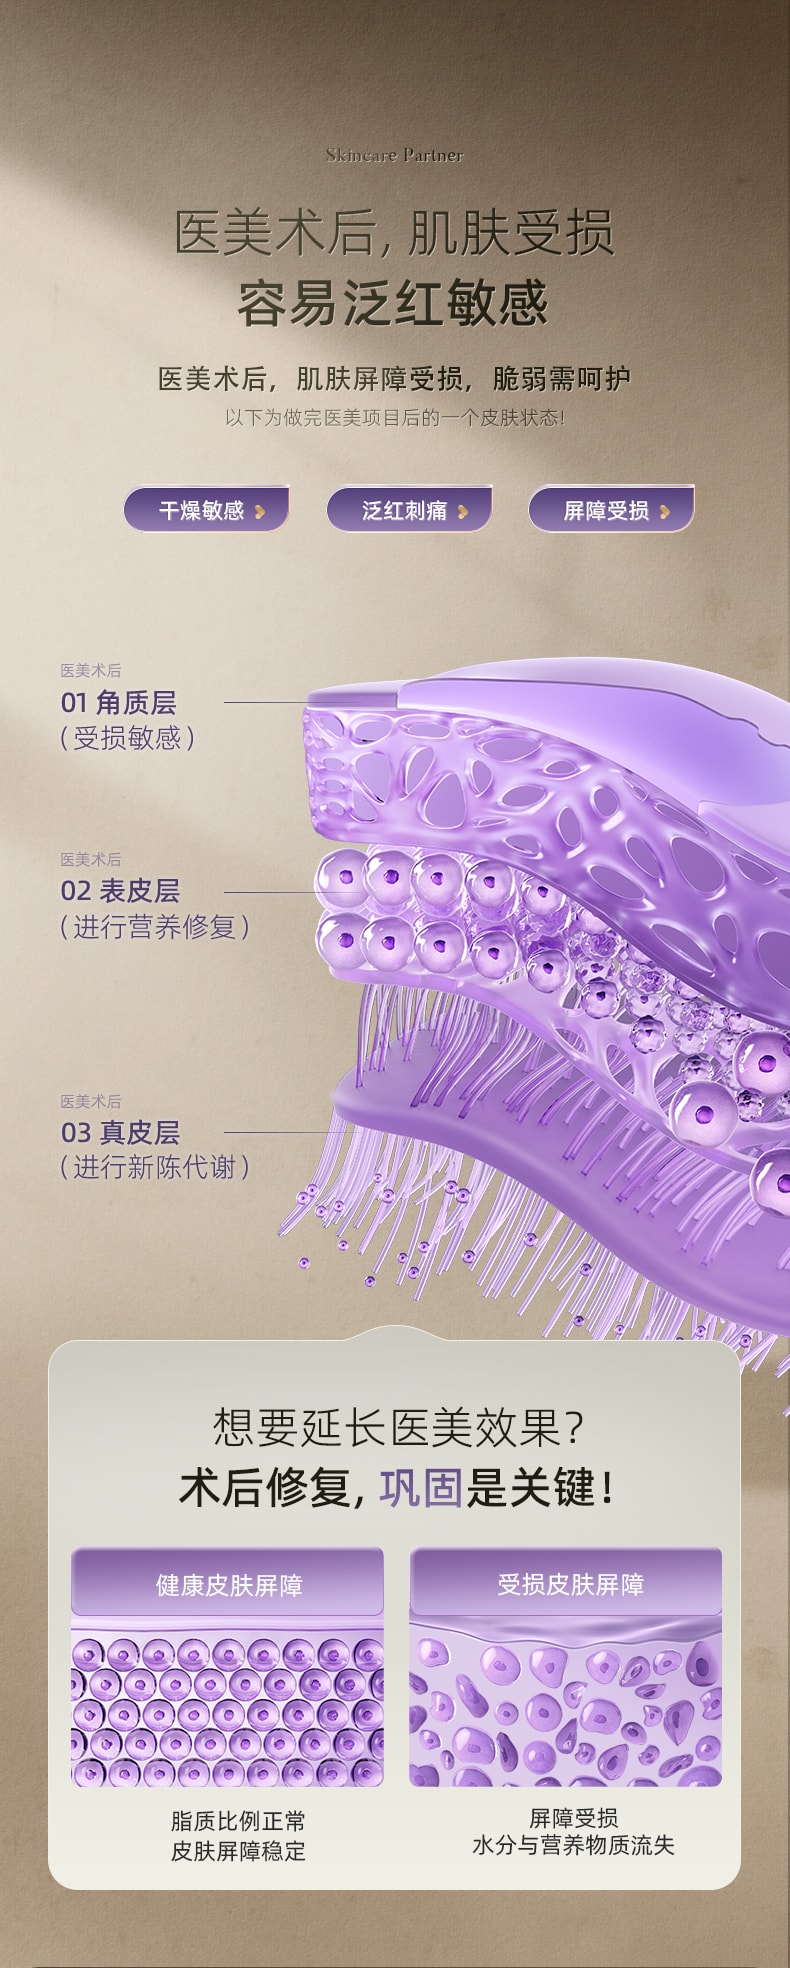 中国谷心GX. Diffuser智能无针水光注氧仪美容仪 雅灰紫升级款